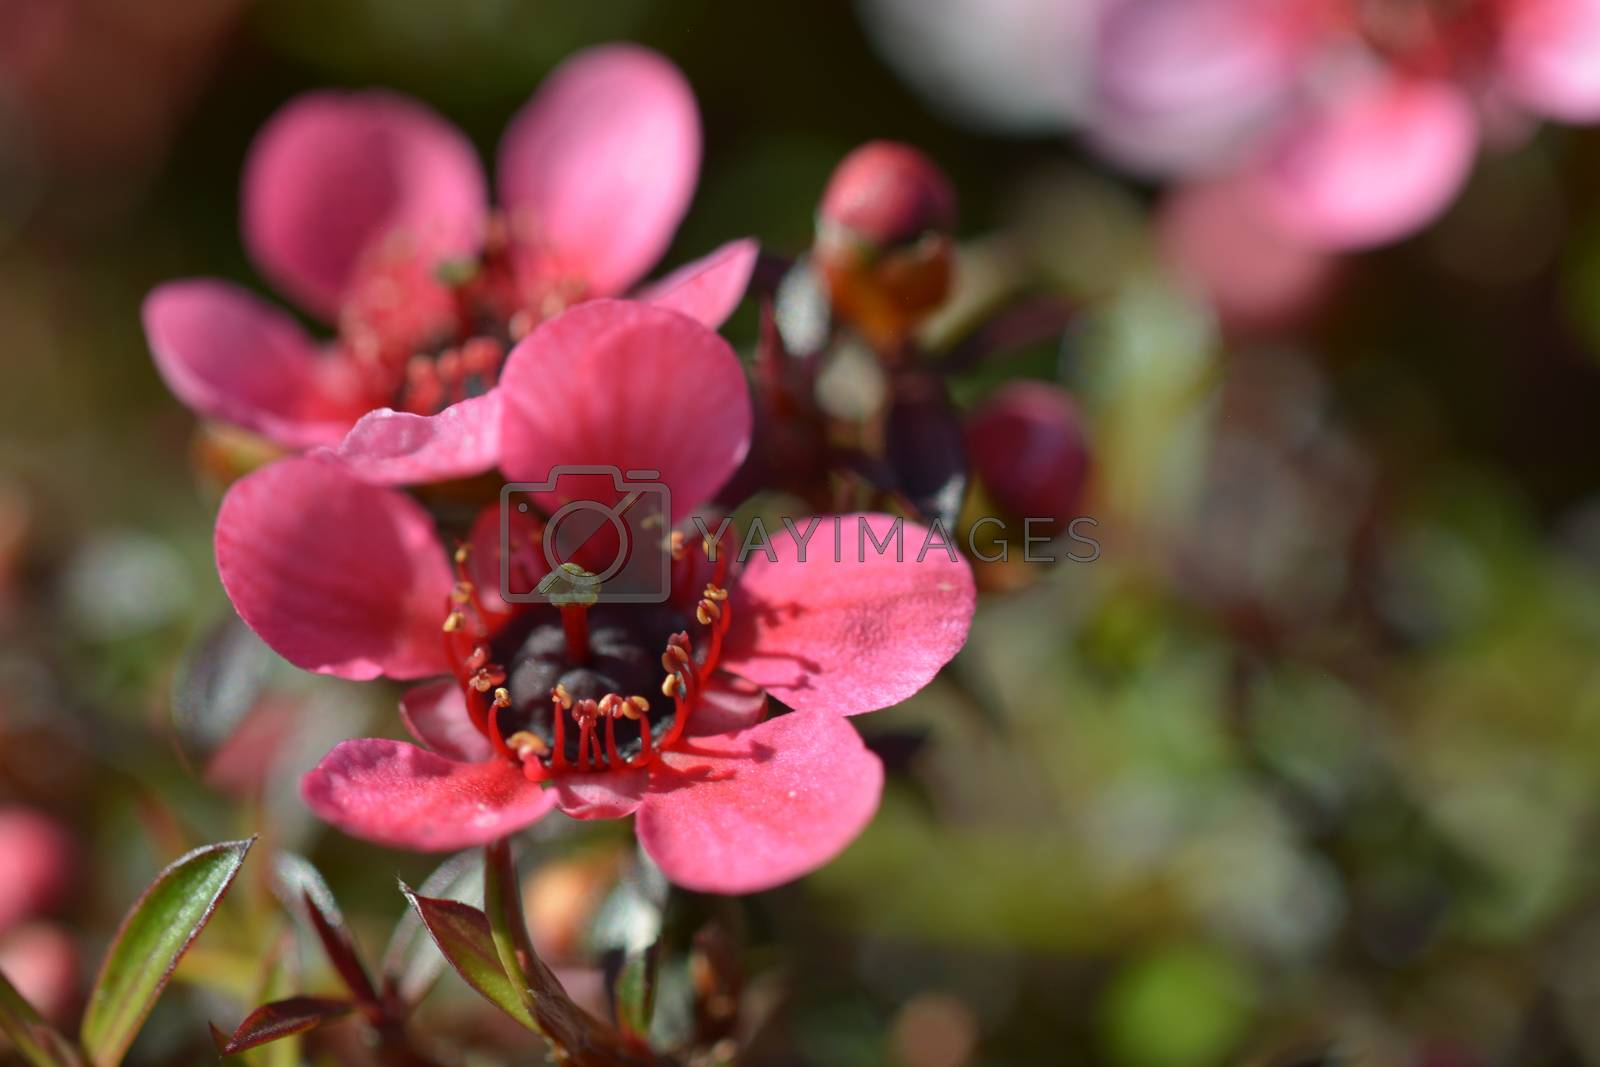 Royalty free image of Flowering Manuka bush, source of famous Manuka honey - New Zealand. by Marshalkina